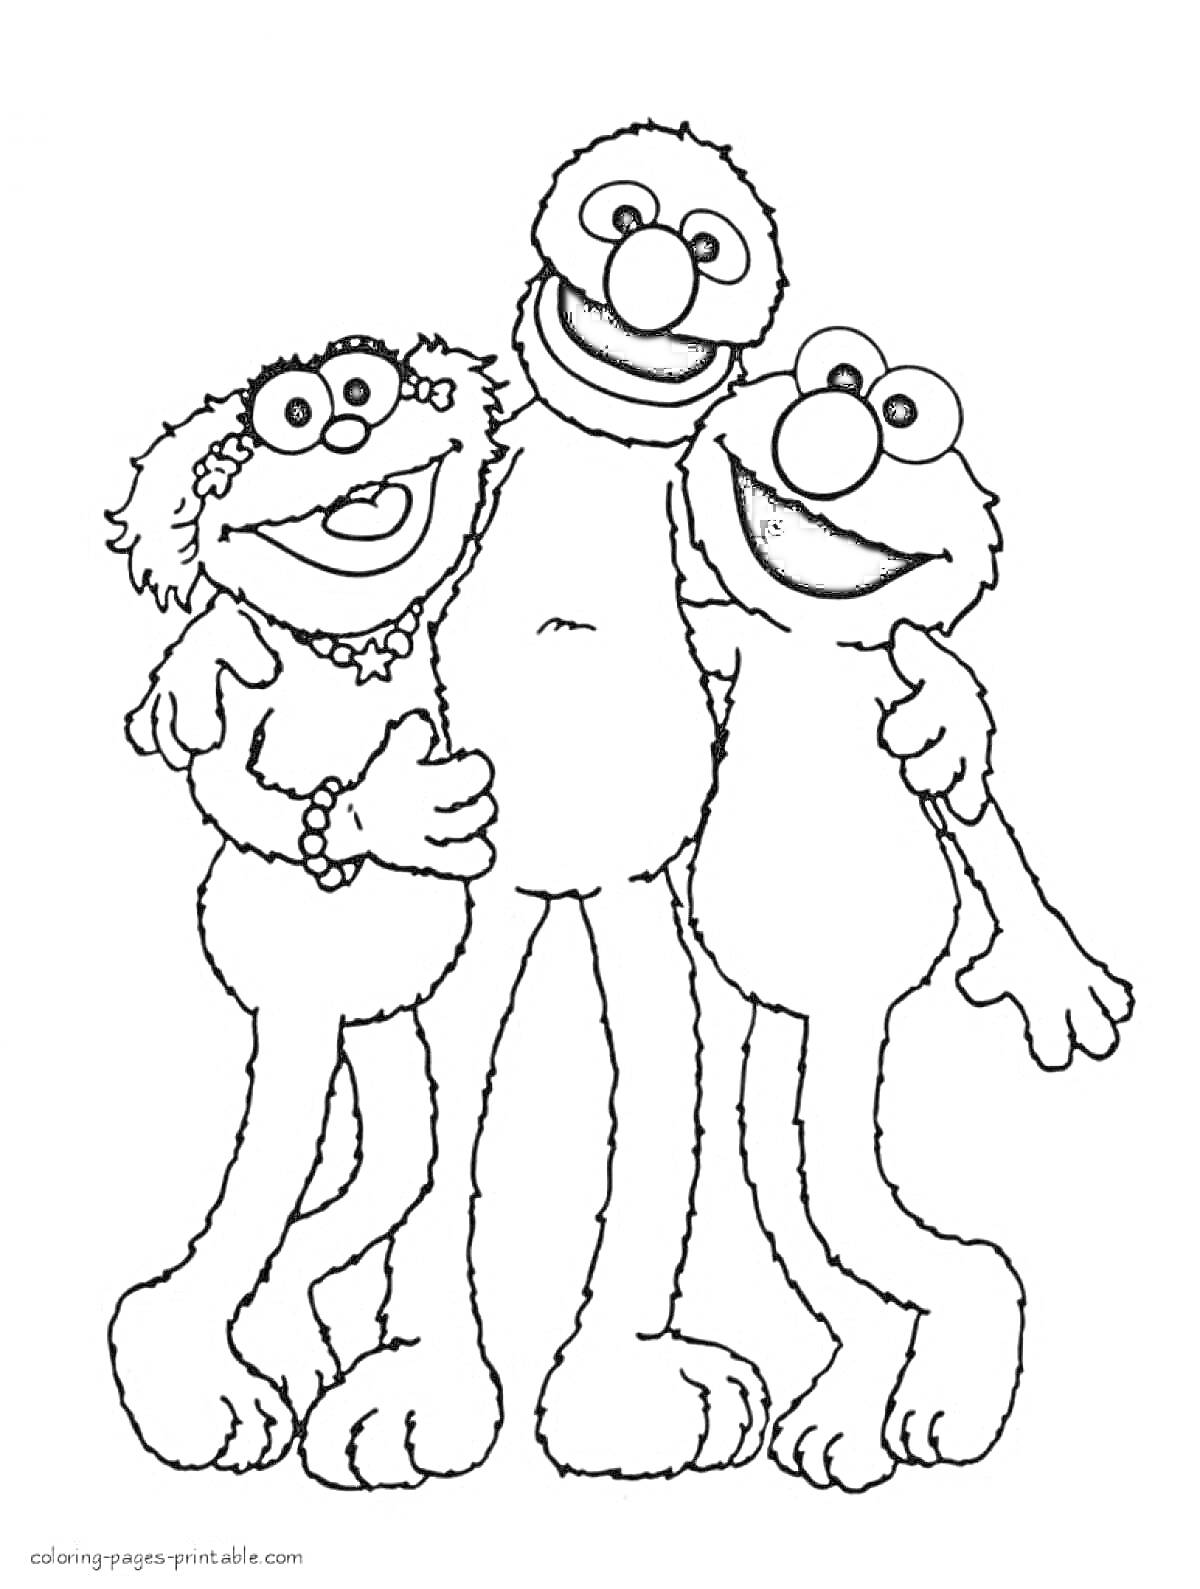 Раскраска Три радужных монстра-друга в обнимку